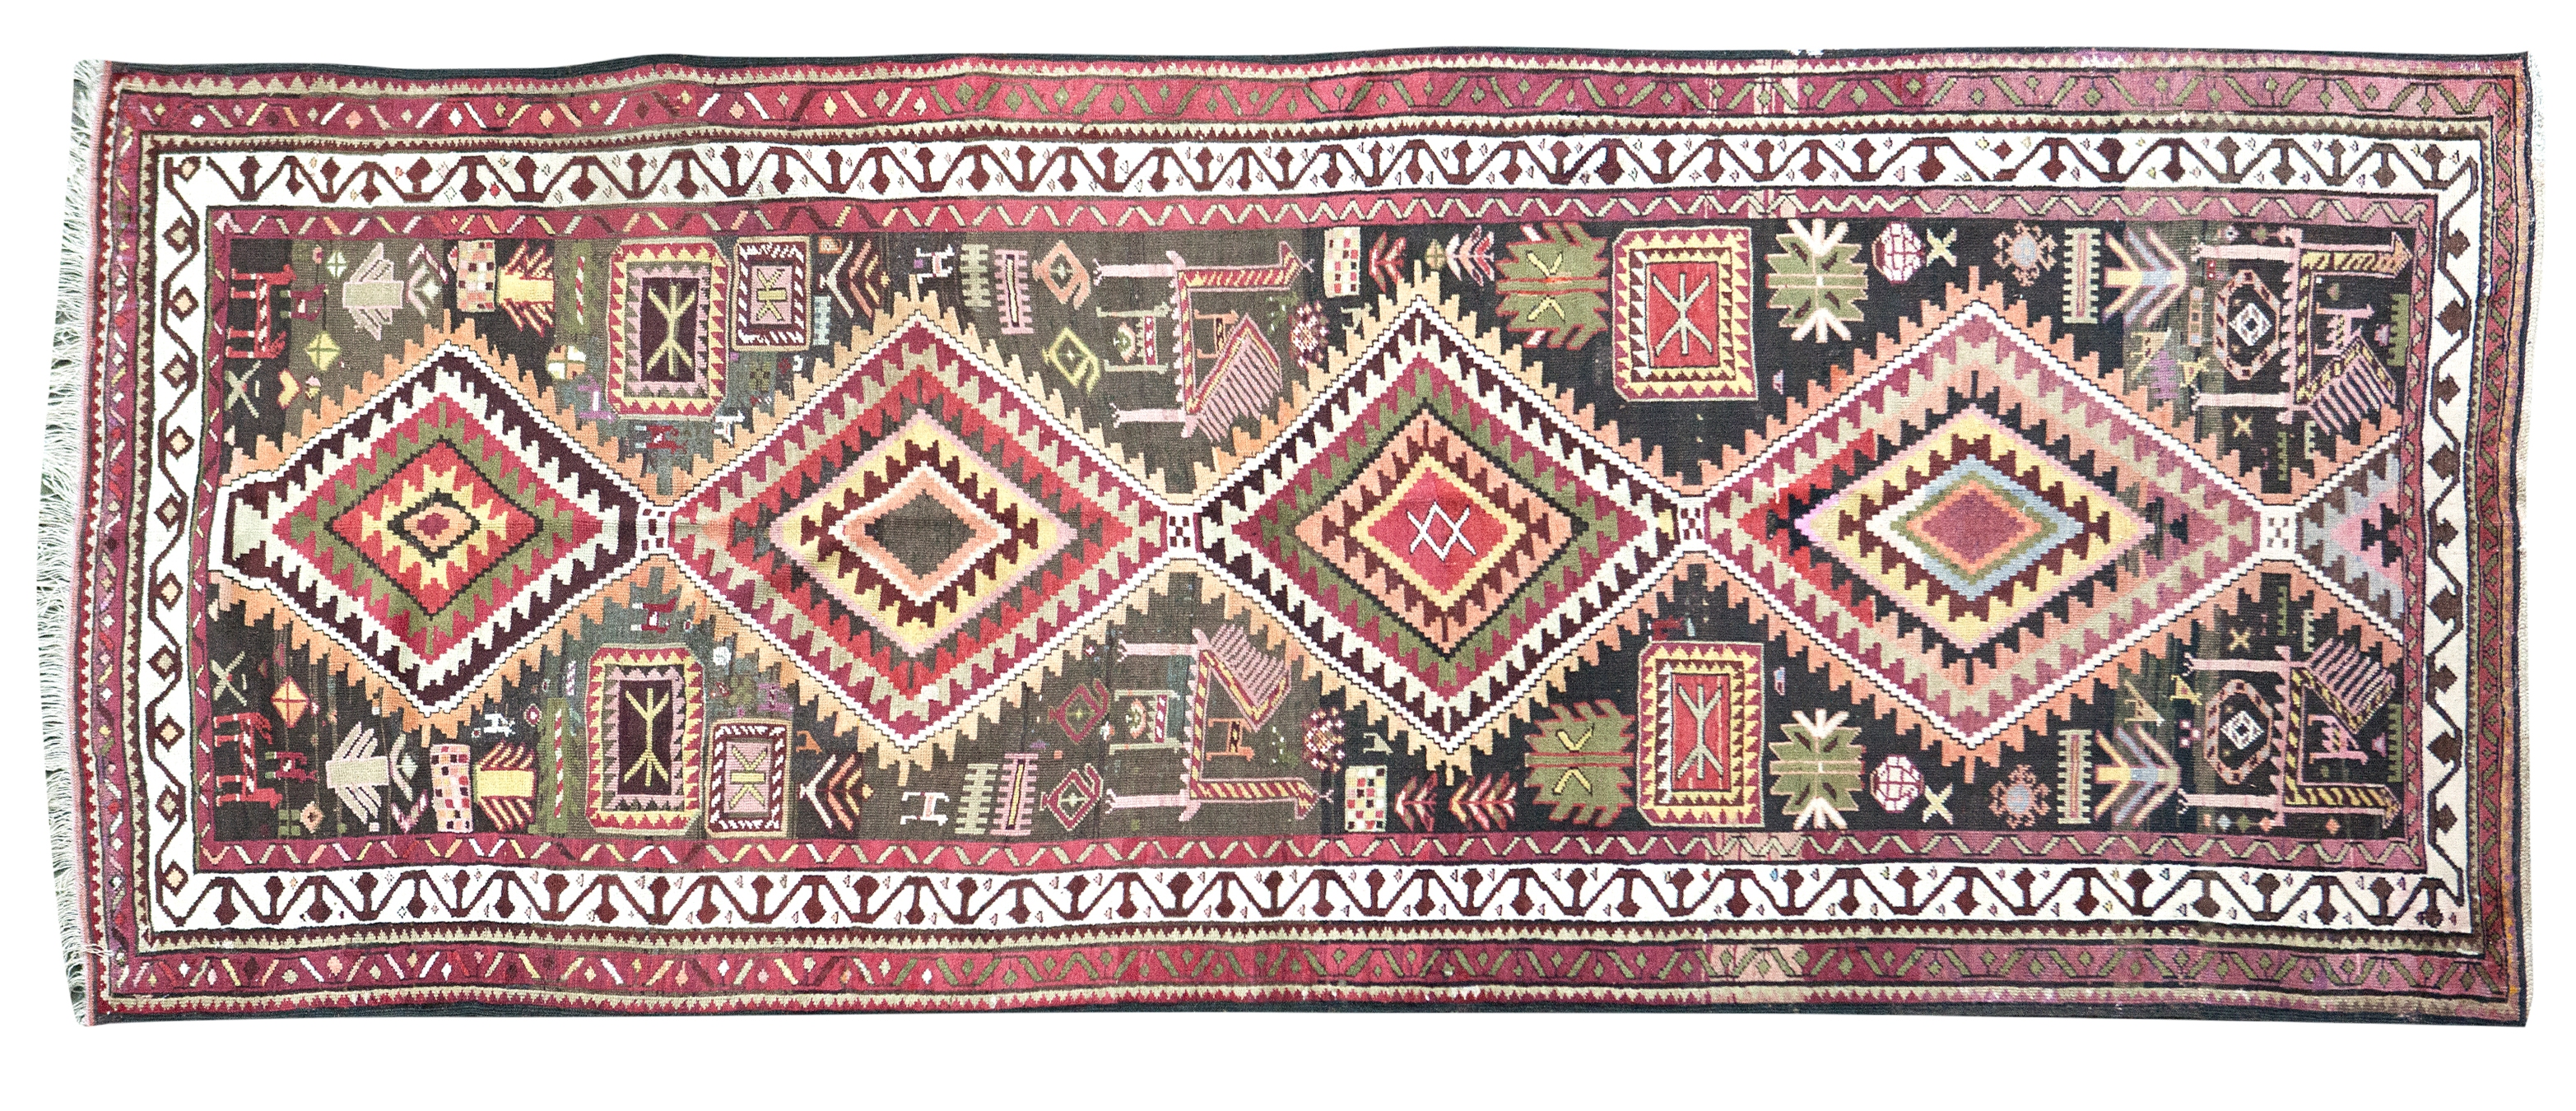 A Shirvan rug 309 x 127cm